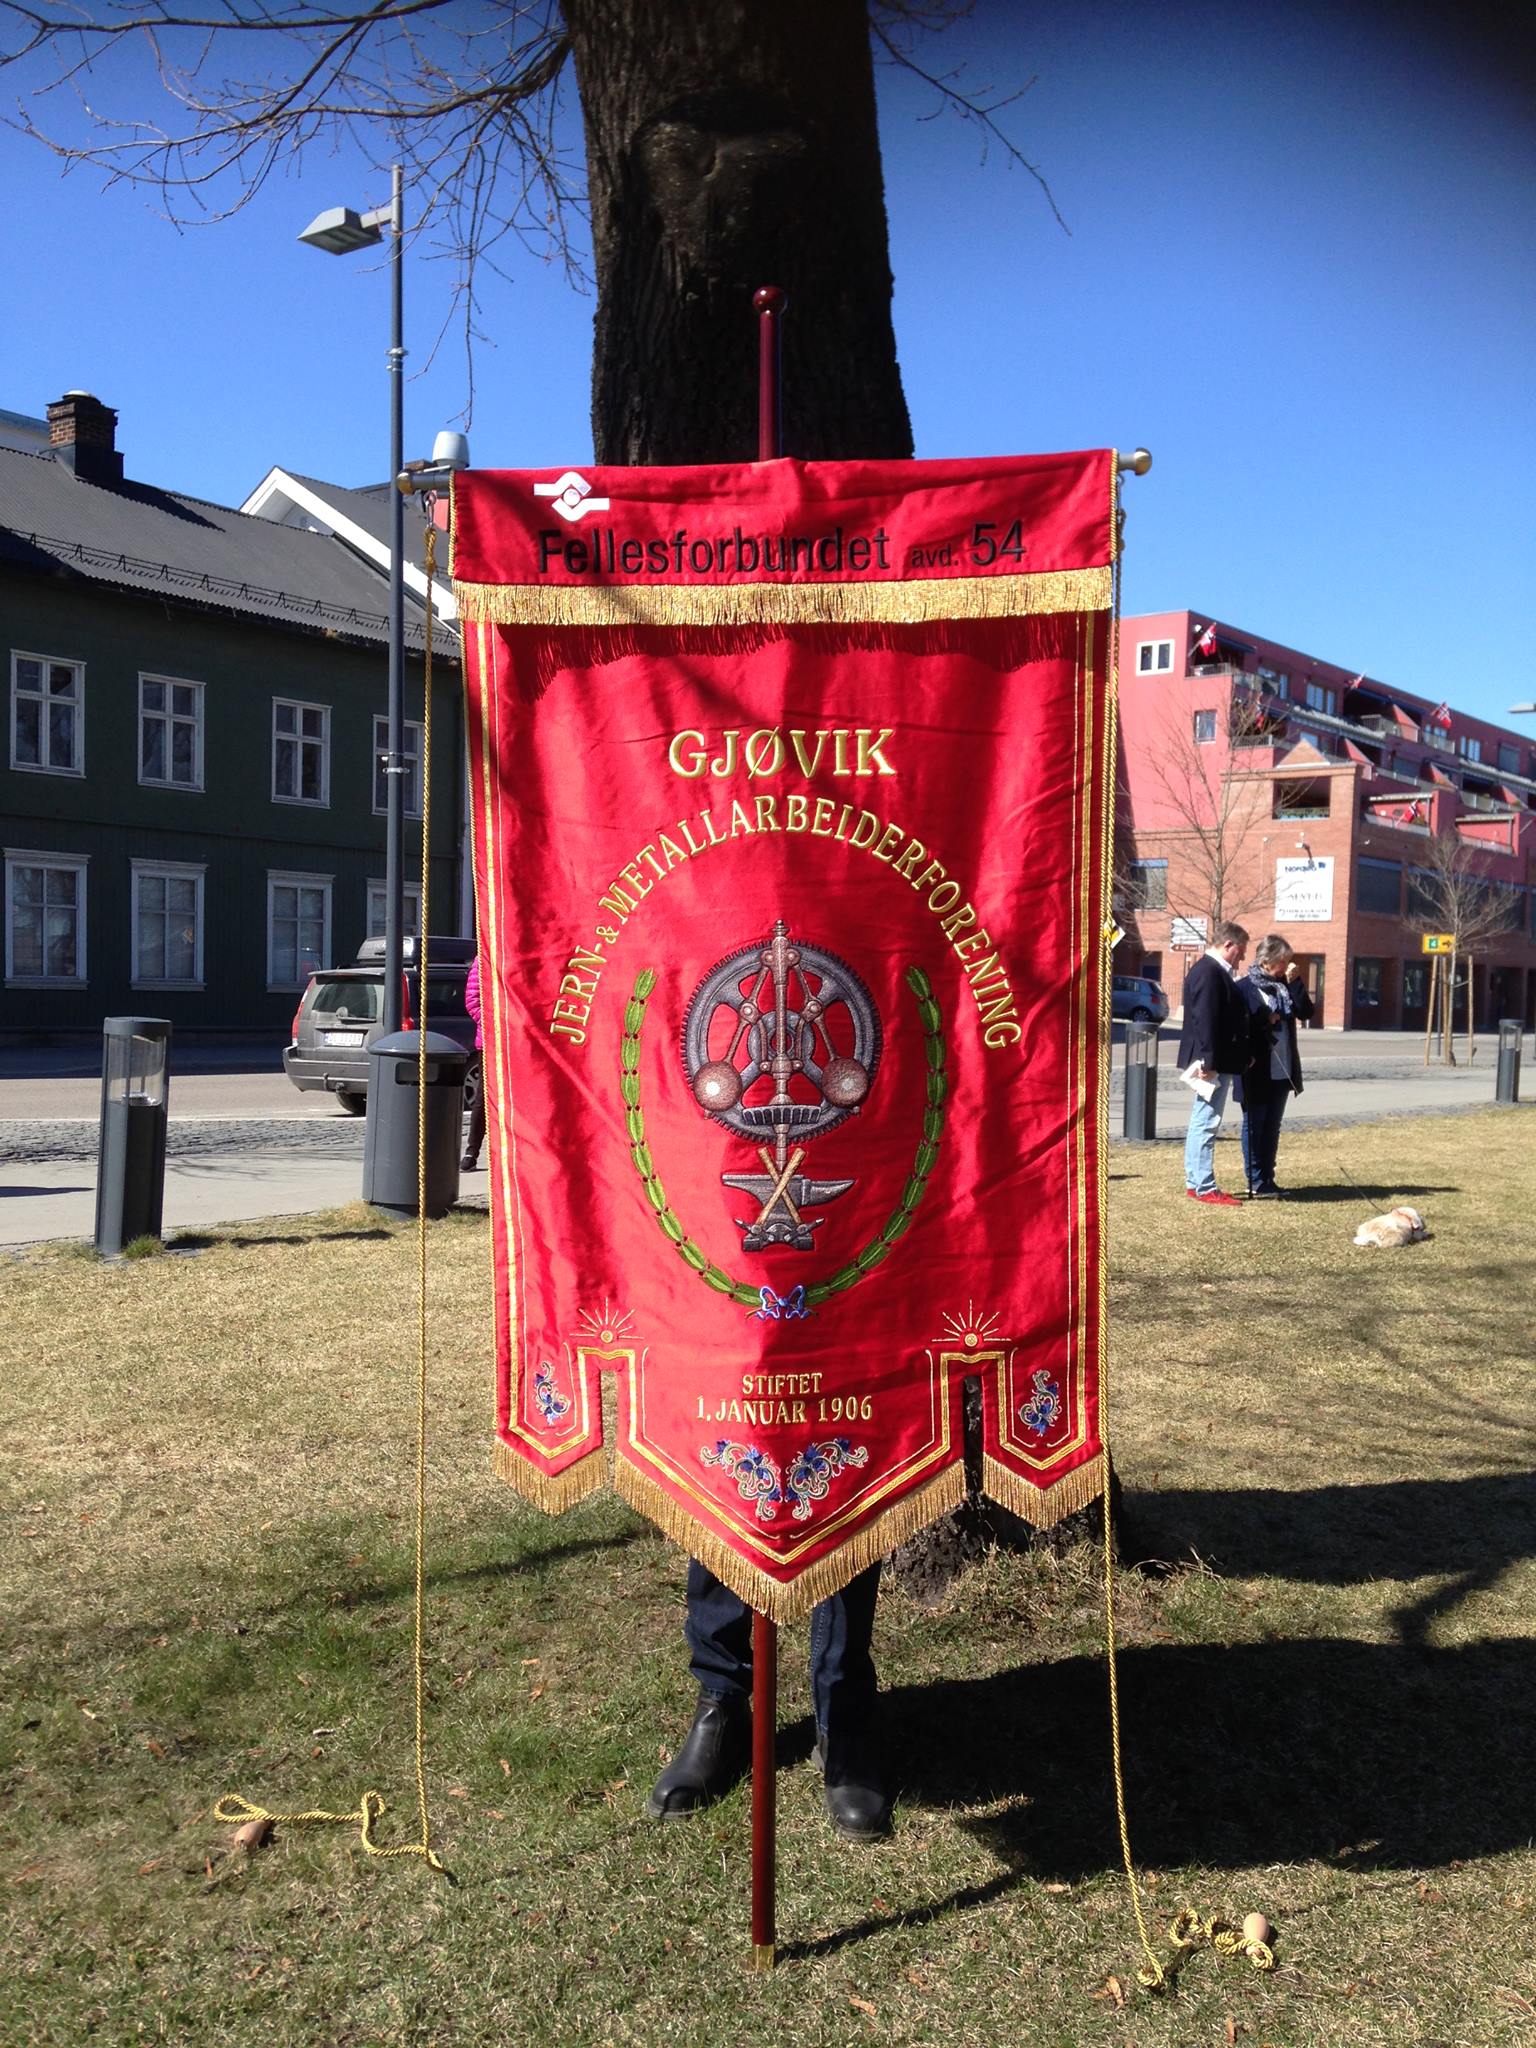 Fellesforbundet avd. 54 Banner. Gjøvik, Jern- & metallarbeiderforening, stiftet 1. Januar 1906